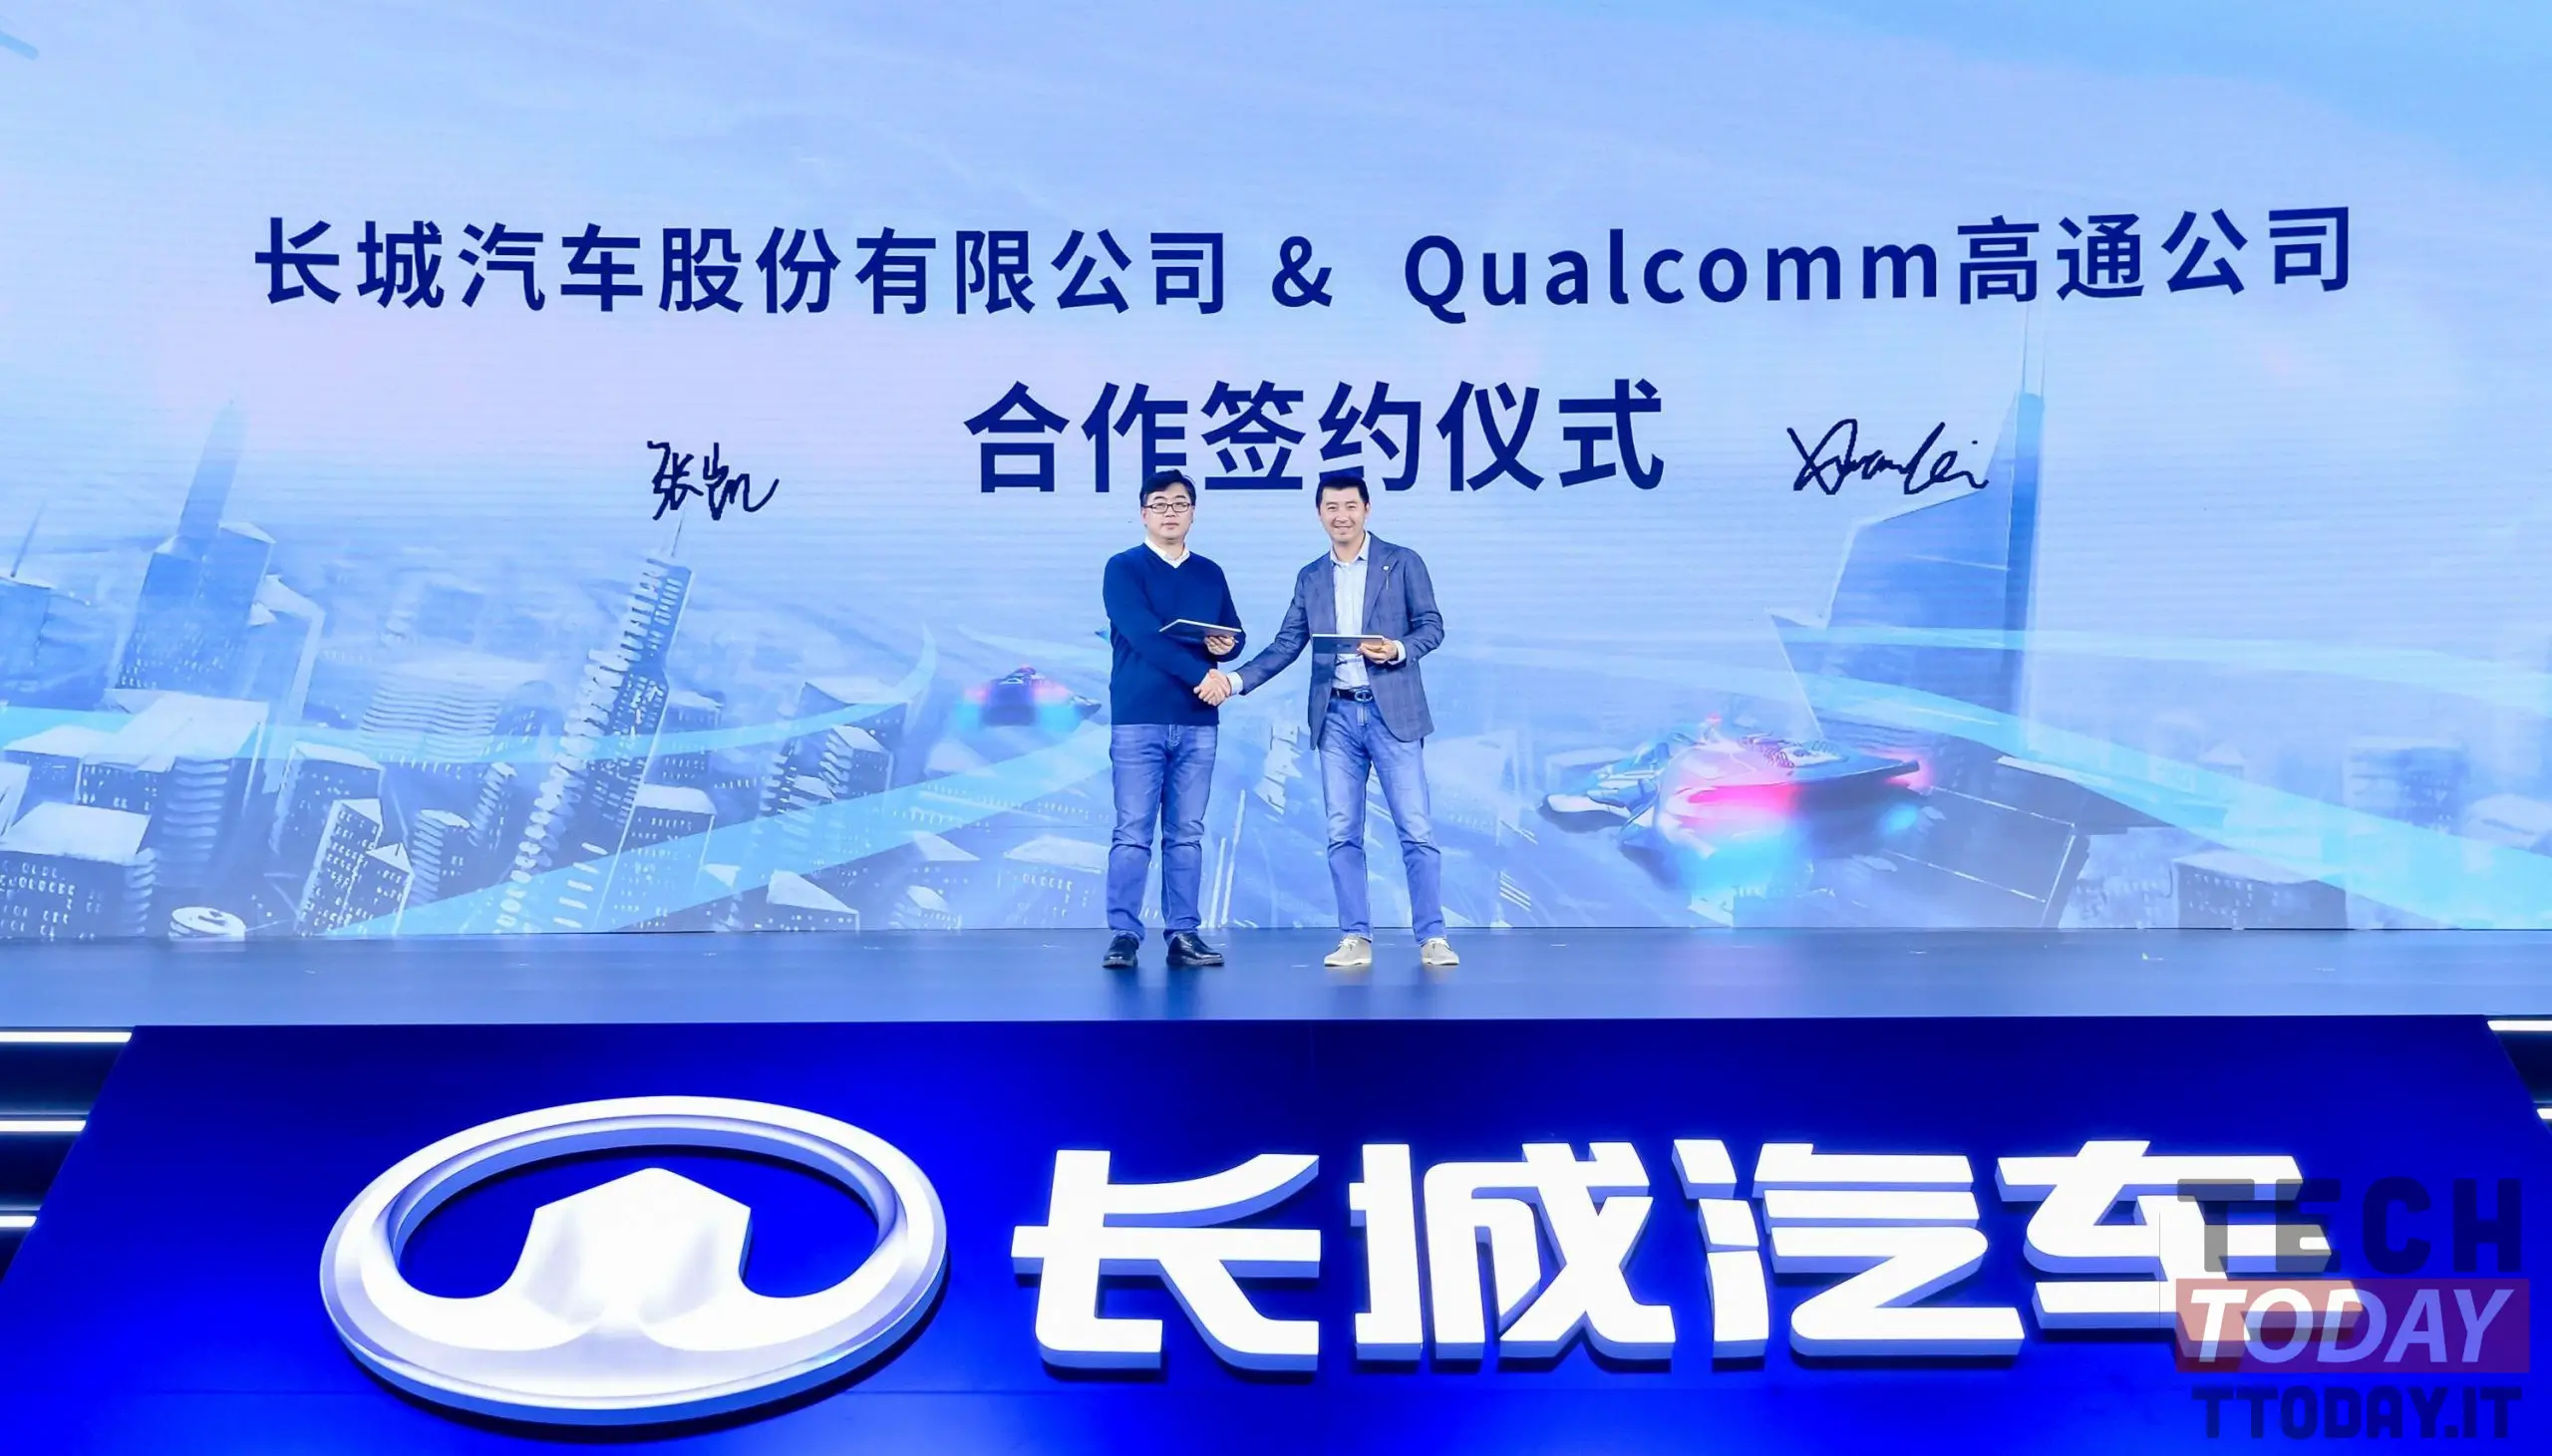 Qualcomm werkt samen met Great Wall Motors om auto's nog slimmer te maken